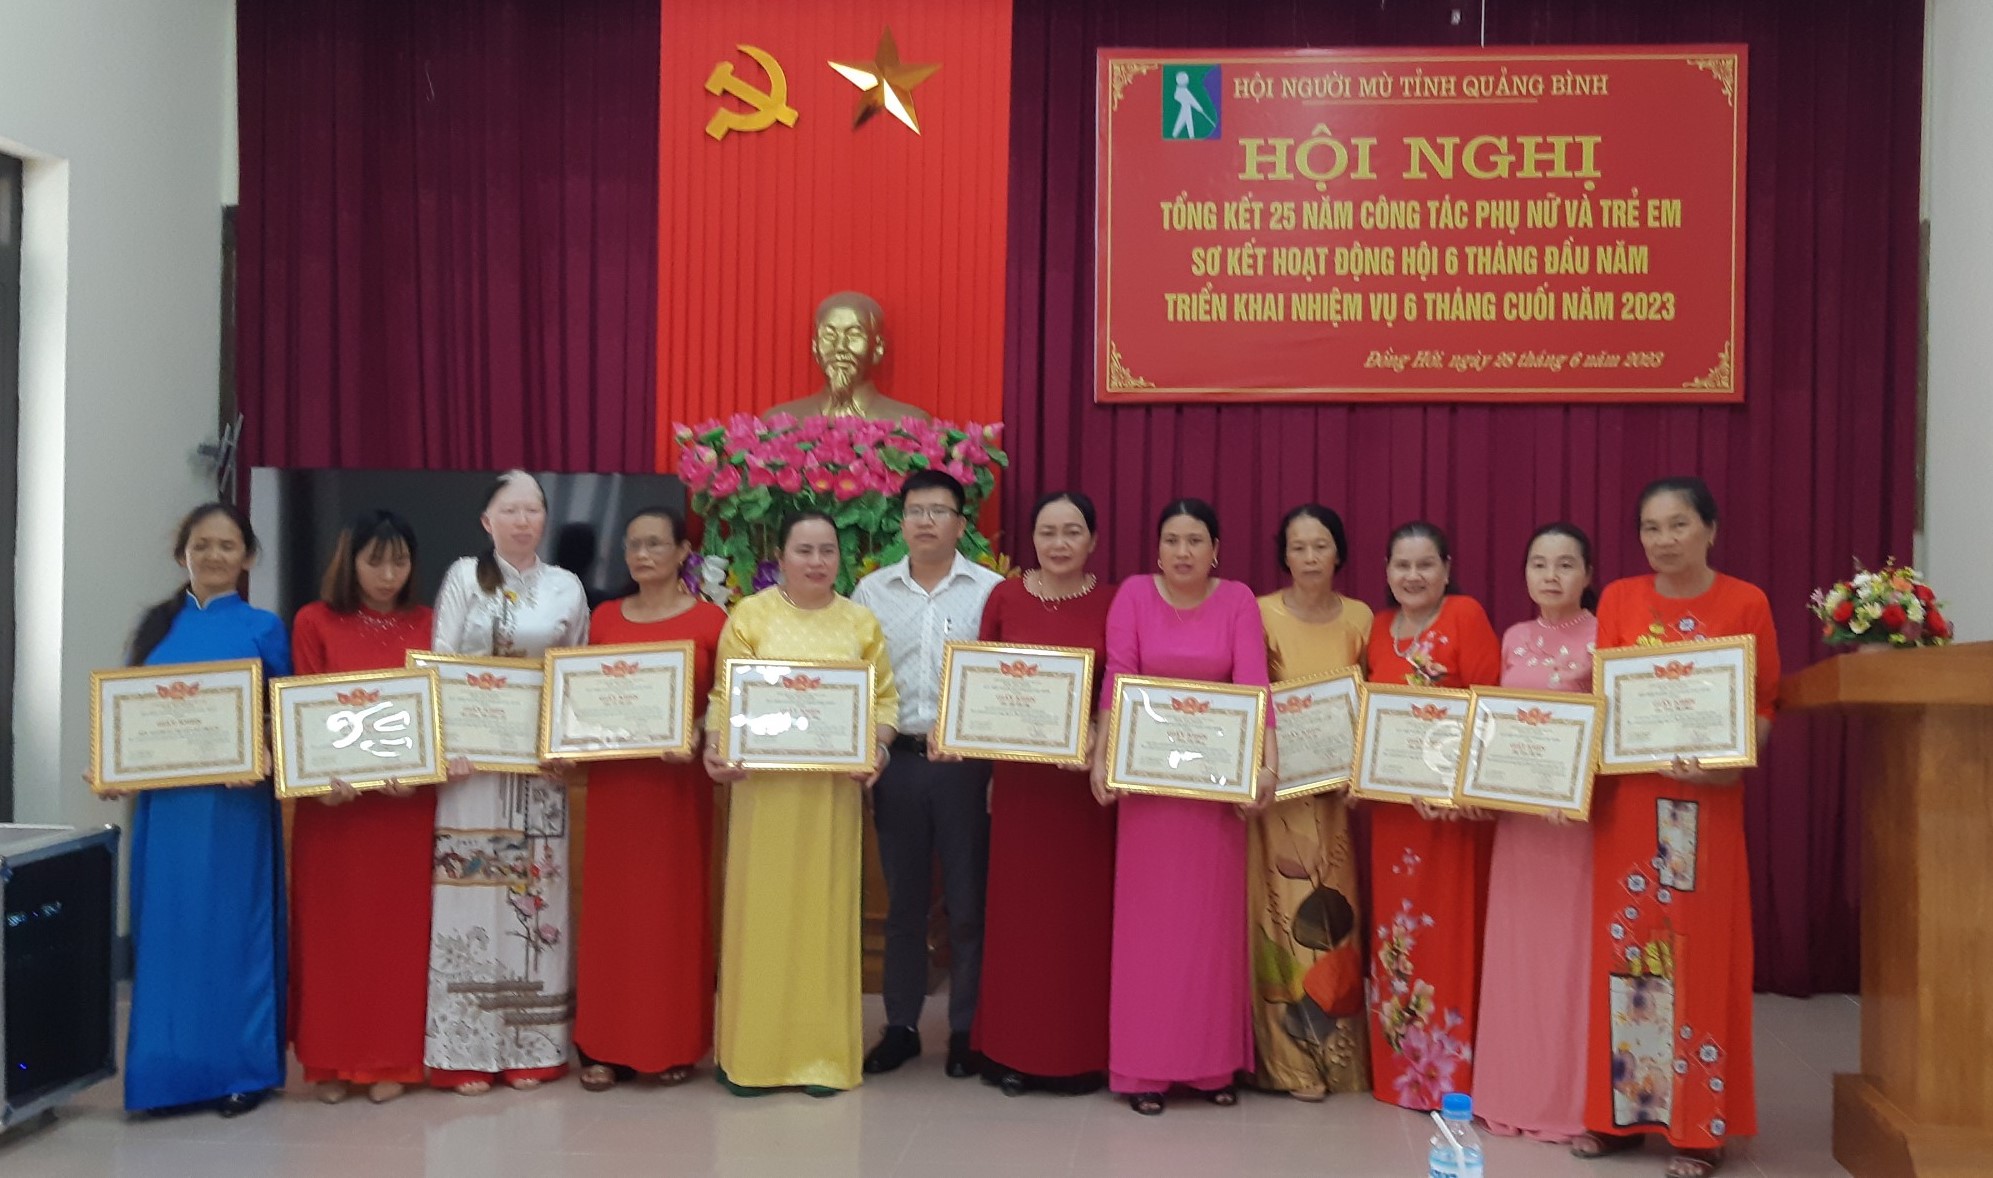 Hội Người mù Quảng Bình tổ chức tổng kết 20 năm Công tác Phụ nữ và Trẻ em